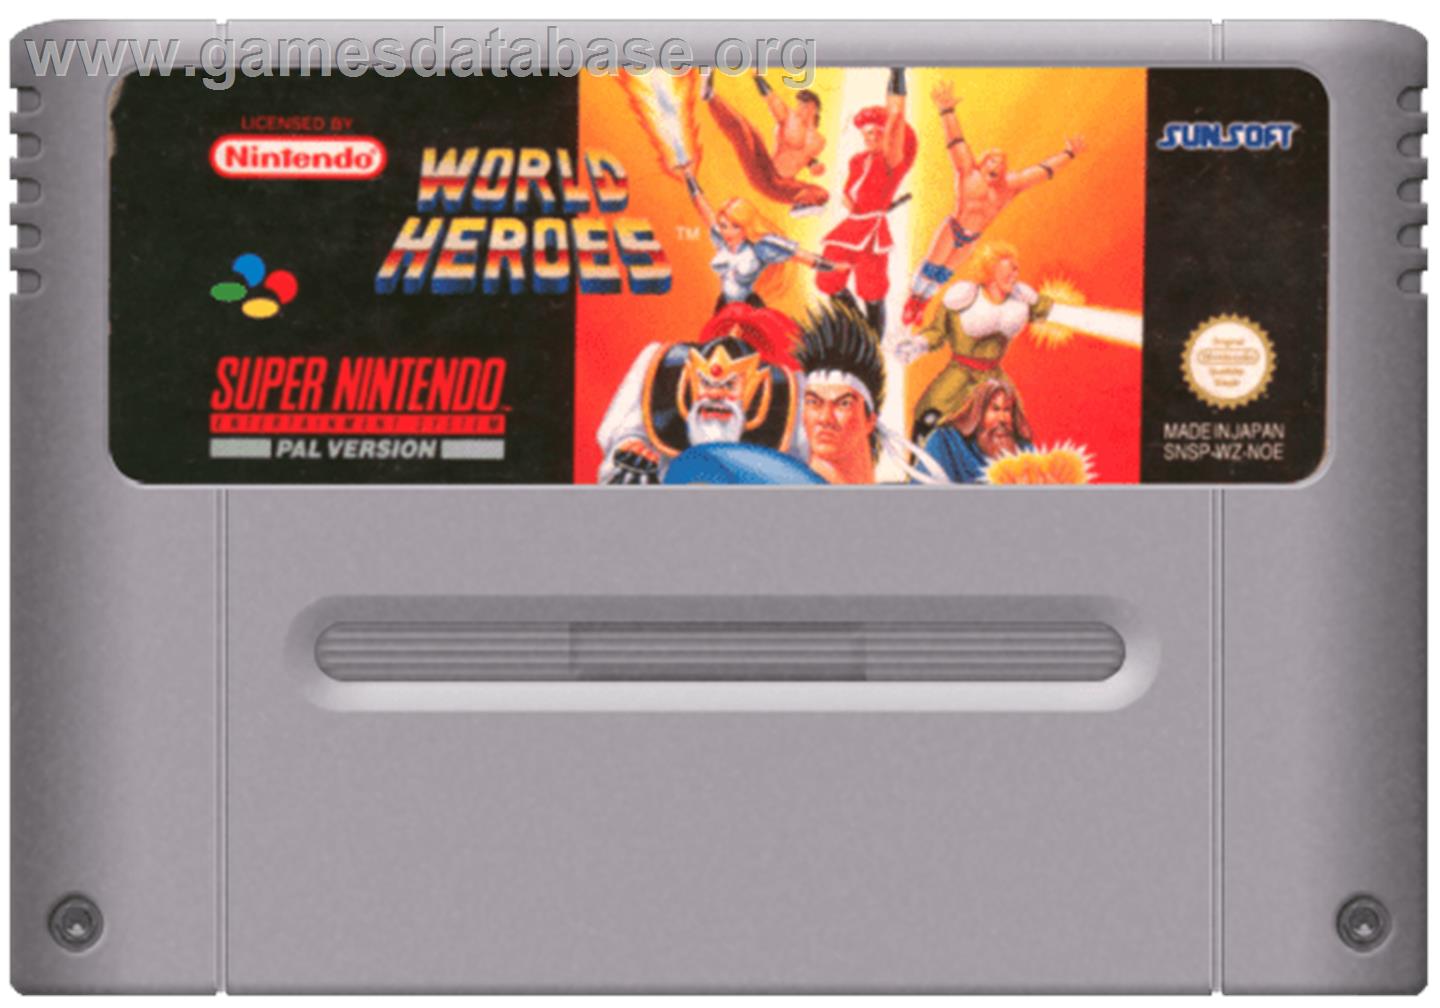 World Heroes - Nintendo SNES - Artwork - Cartridge